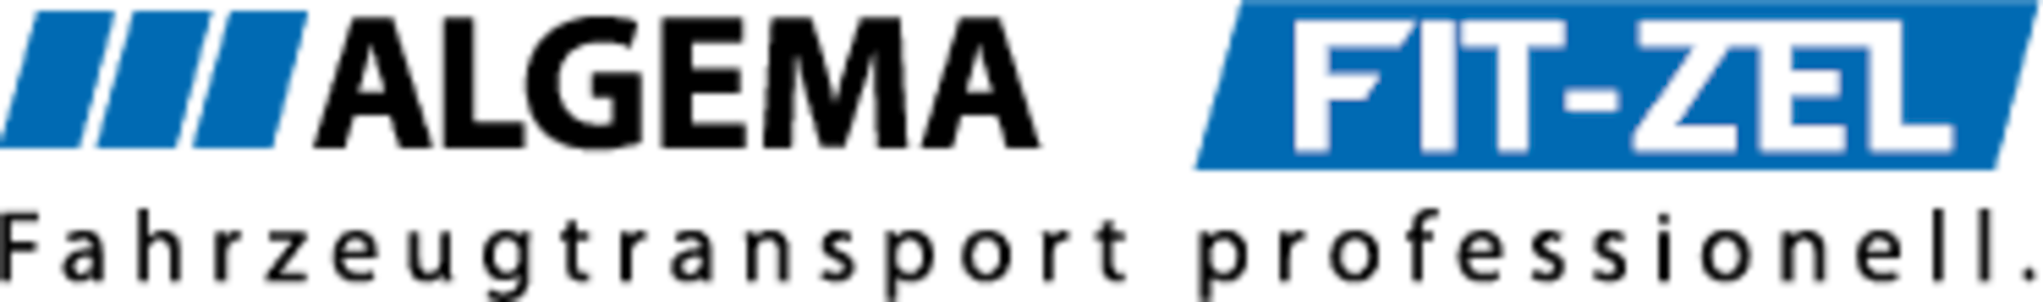 Logo Algema-Fit-zel